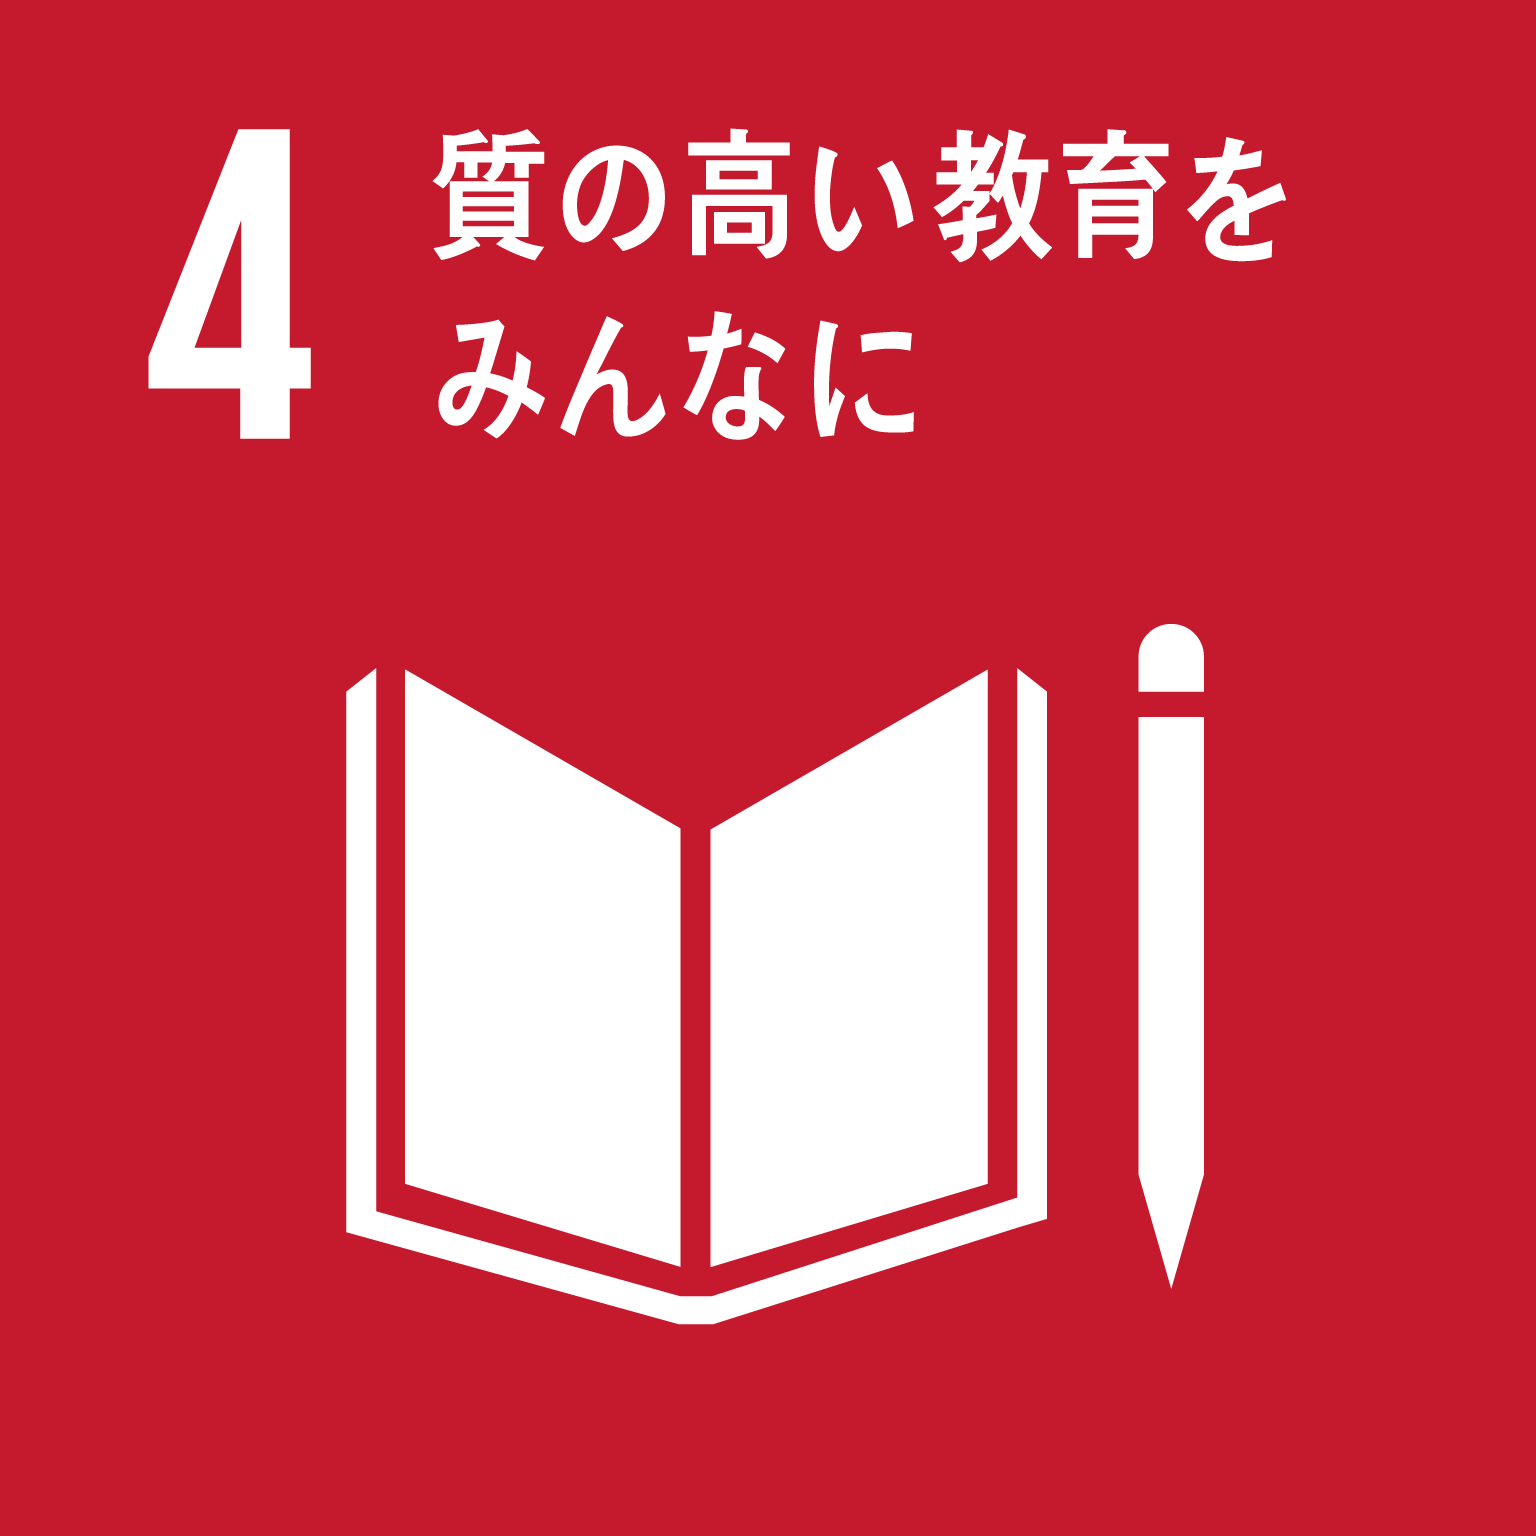 「4.質の高い教育をみんなに」の文字と目標4のロゴ